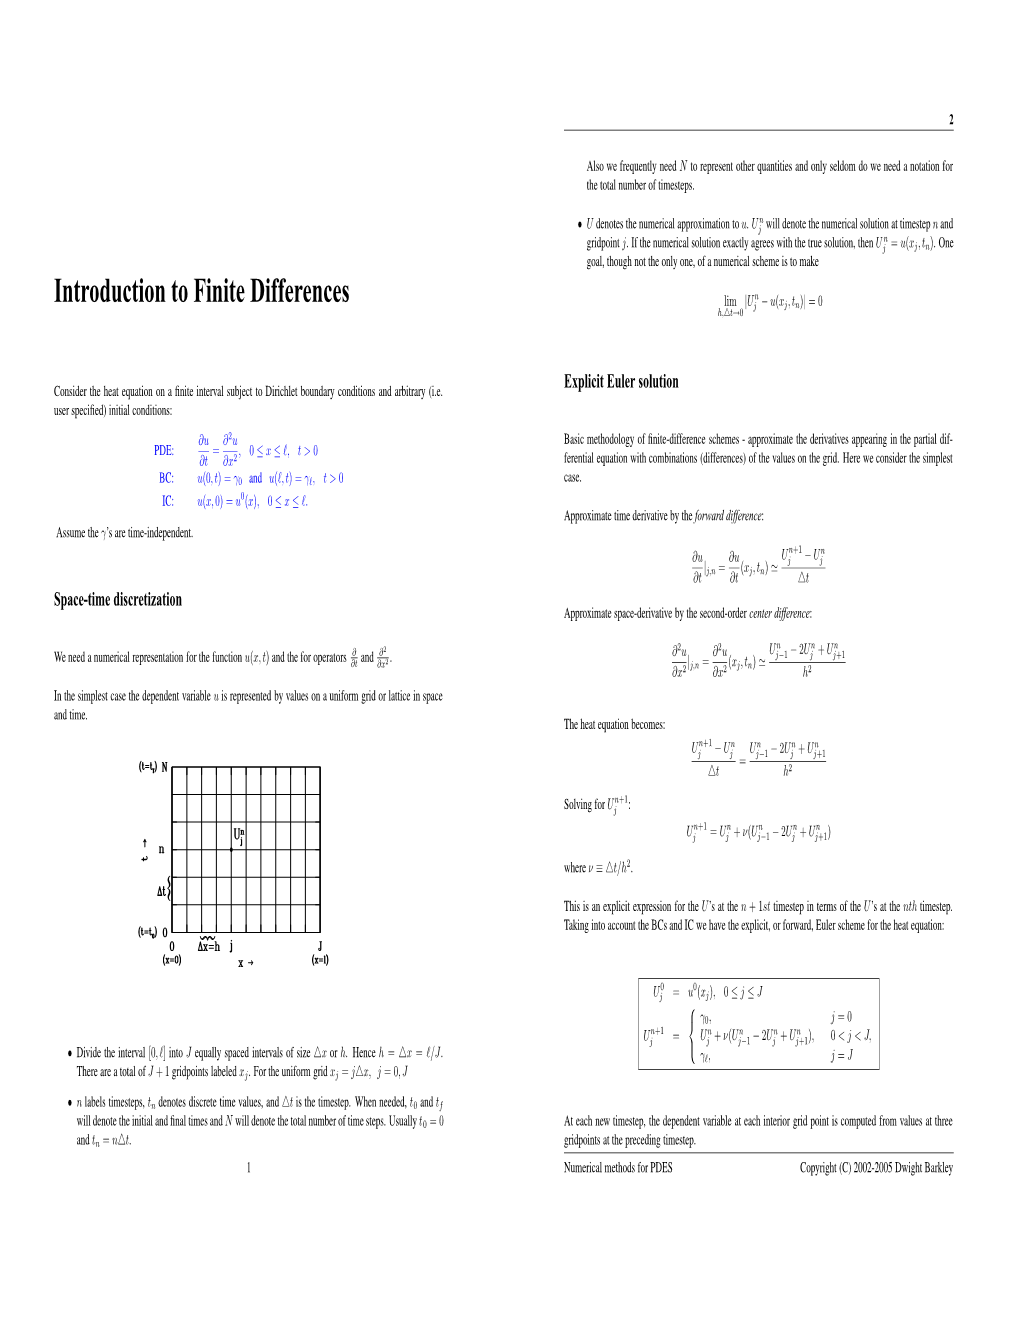 Introduction to Finite Differences Lim |Uj − U(Xj, Tn)| = 0 H,4T→0